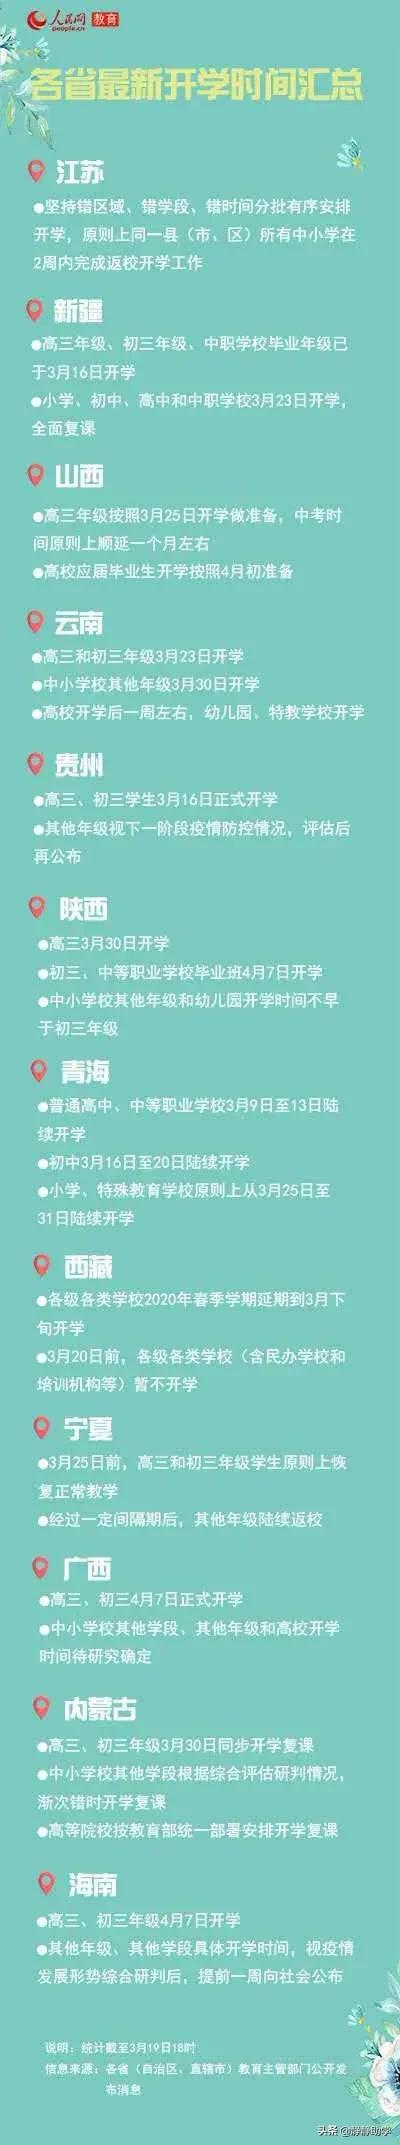 江西和江苏都已经宣布开学日期了，那福建省大概什么时候能宣布开学？